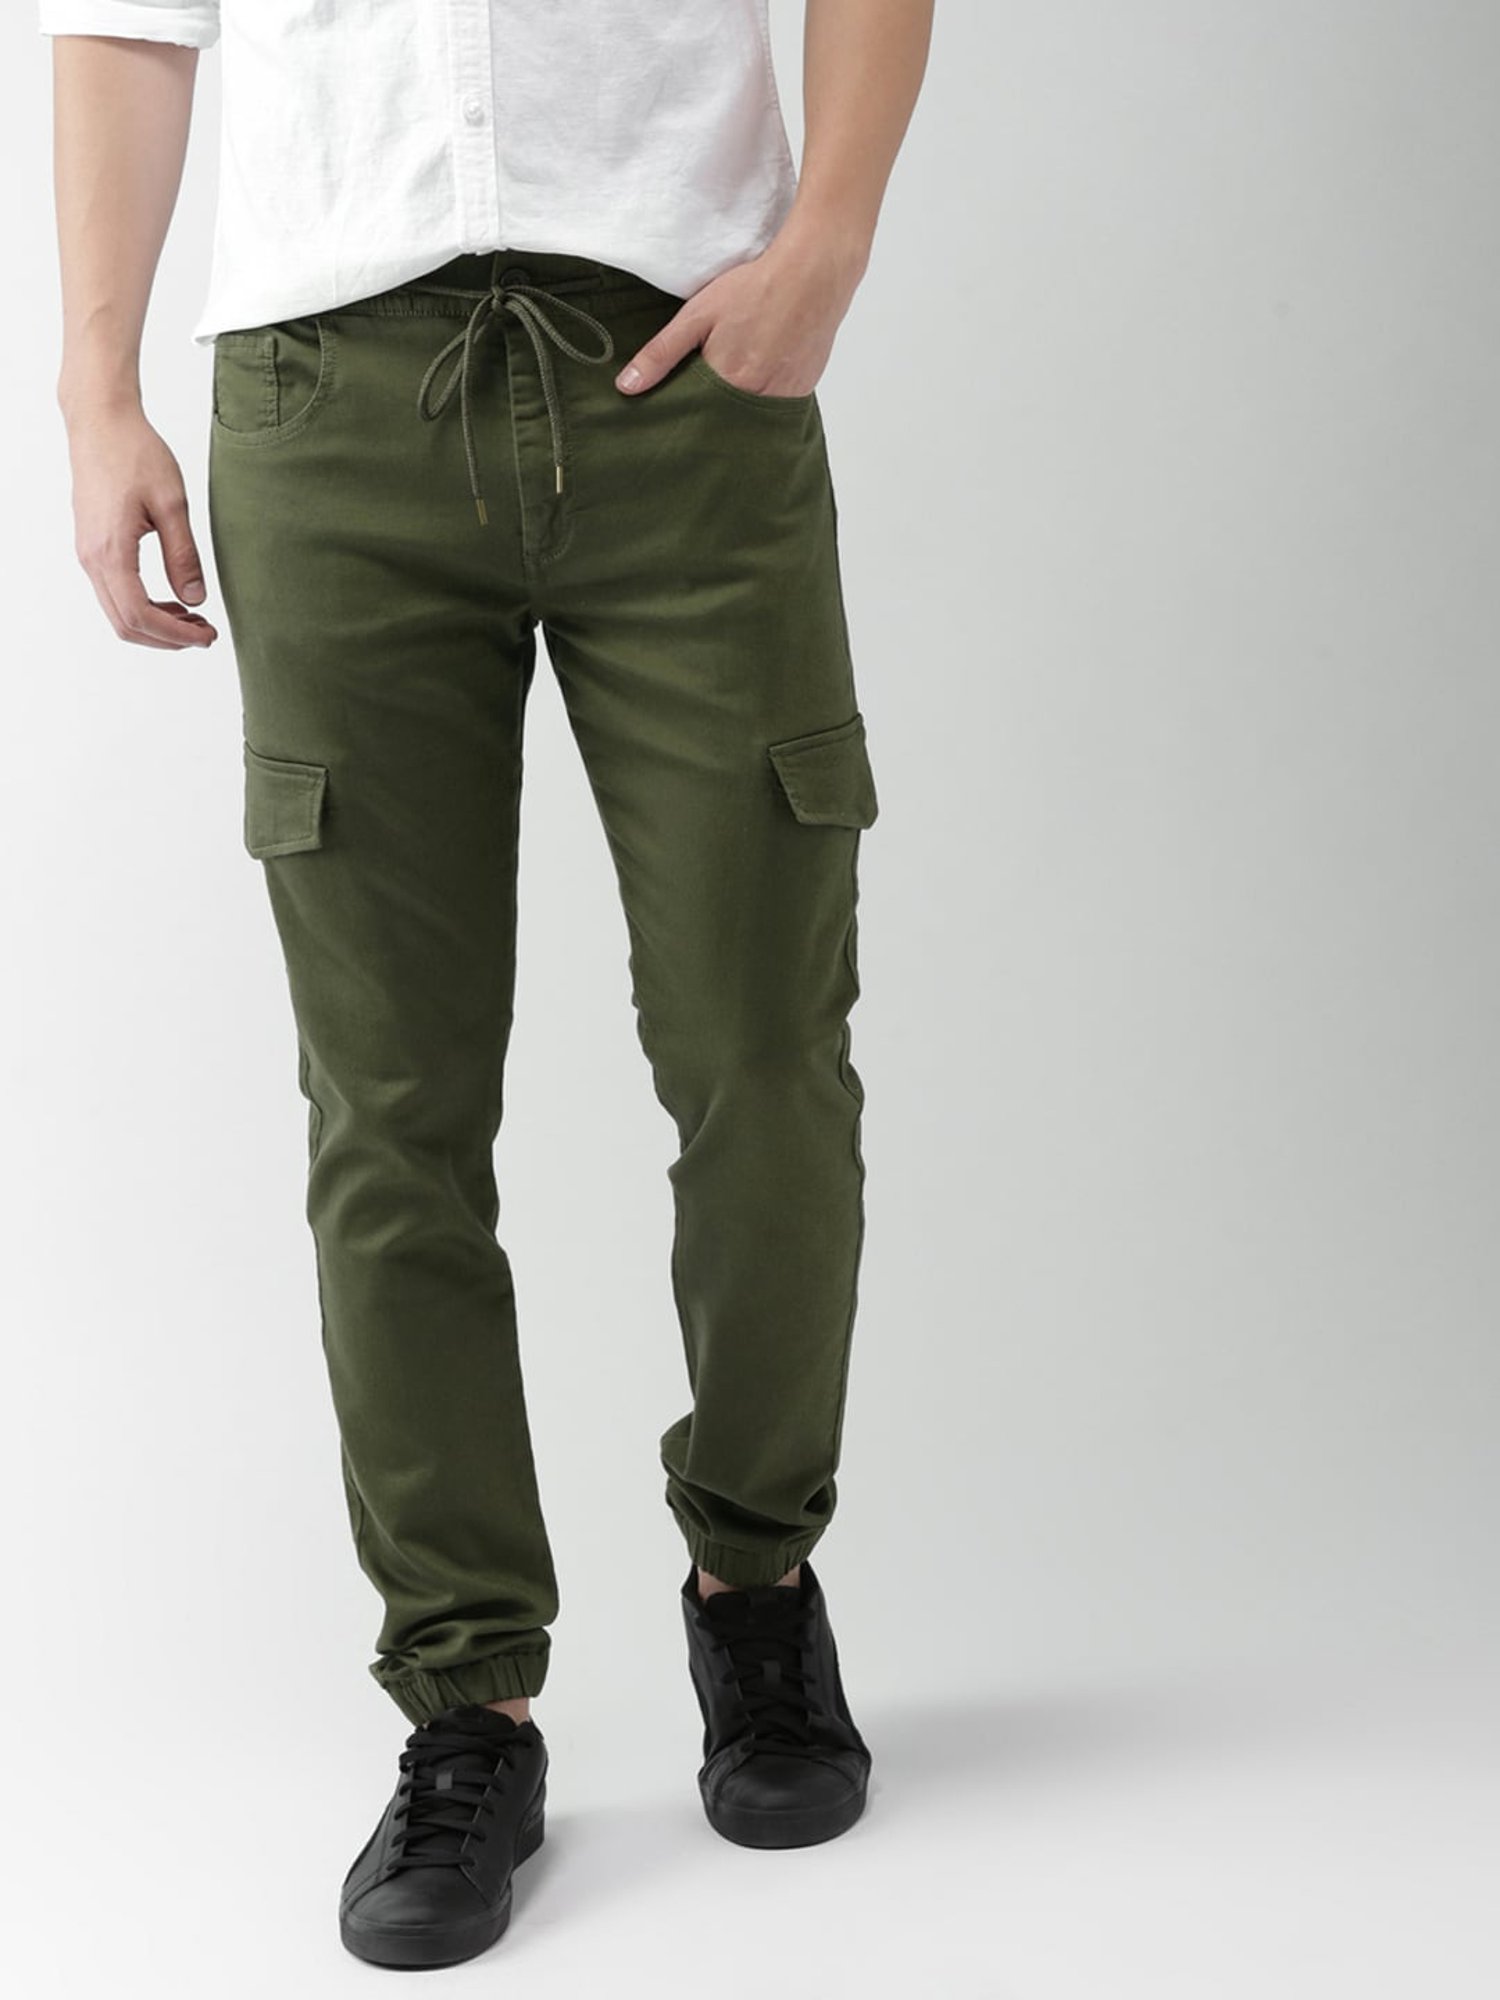 Men's Tactical Green Jogger Pants | All Green Joggers | Born Primitive